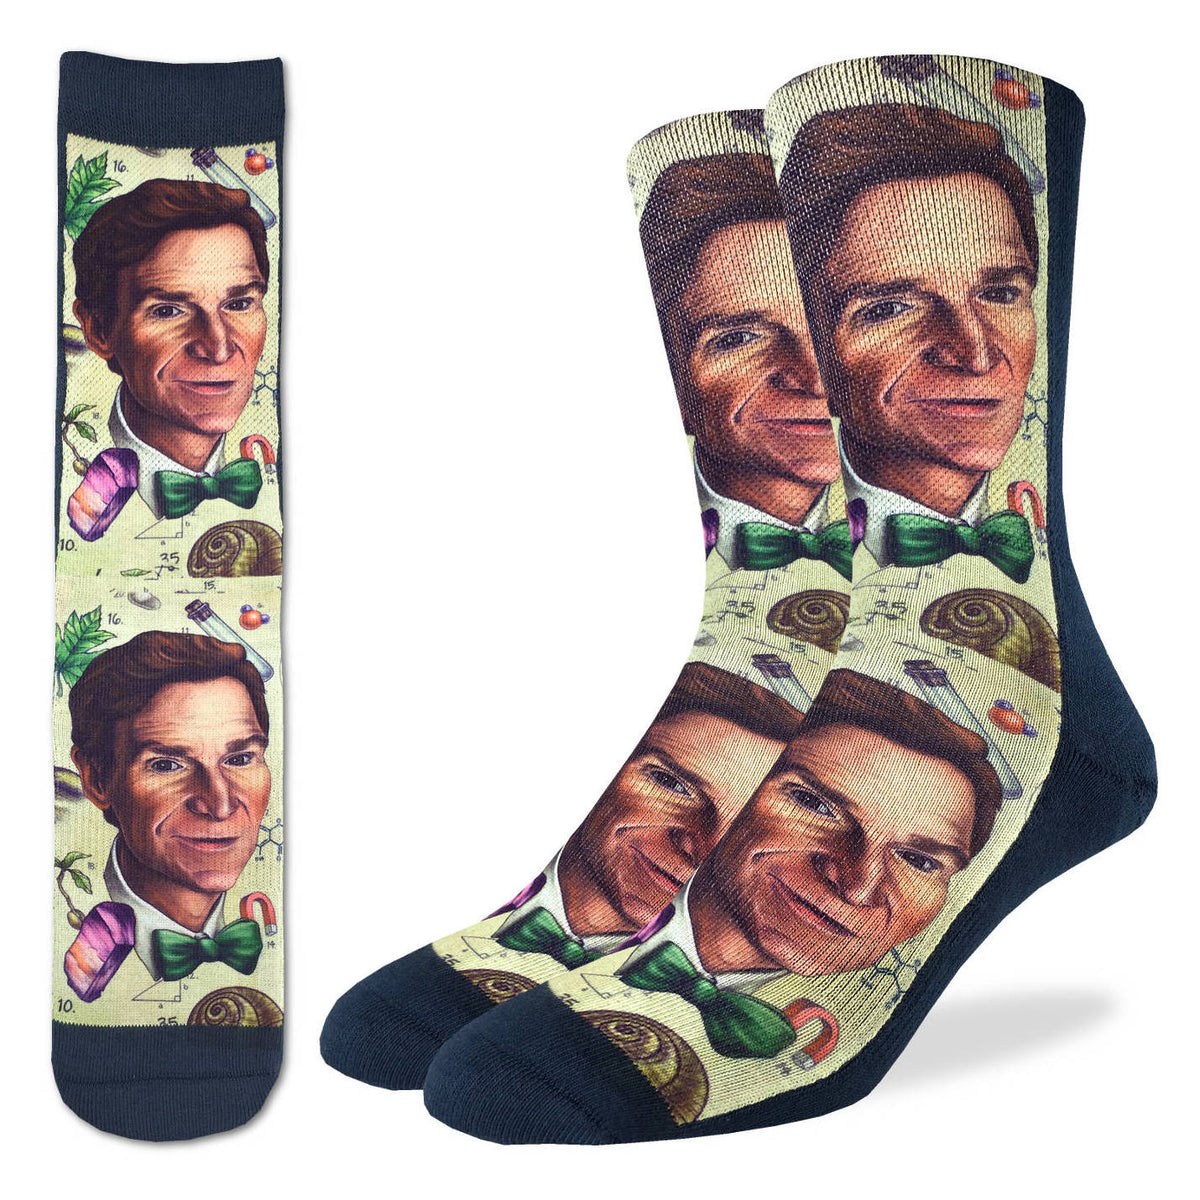 Men's Bill Nye Socks